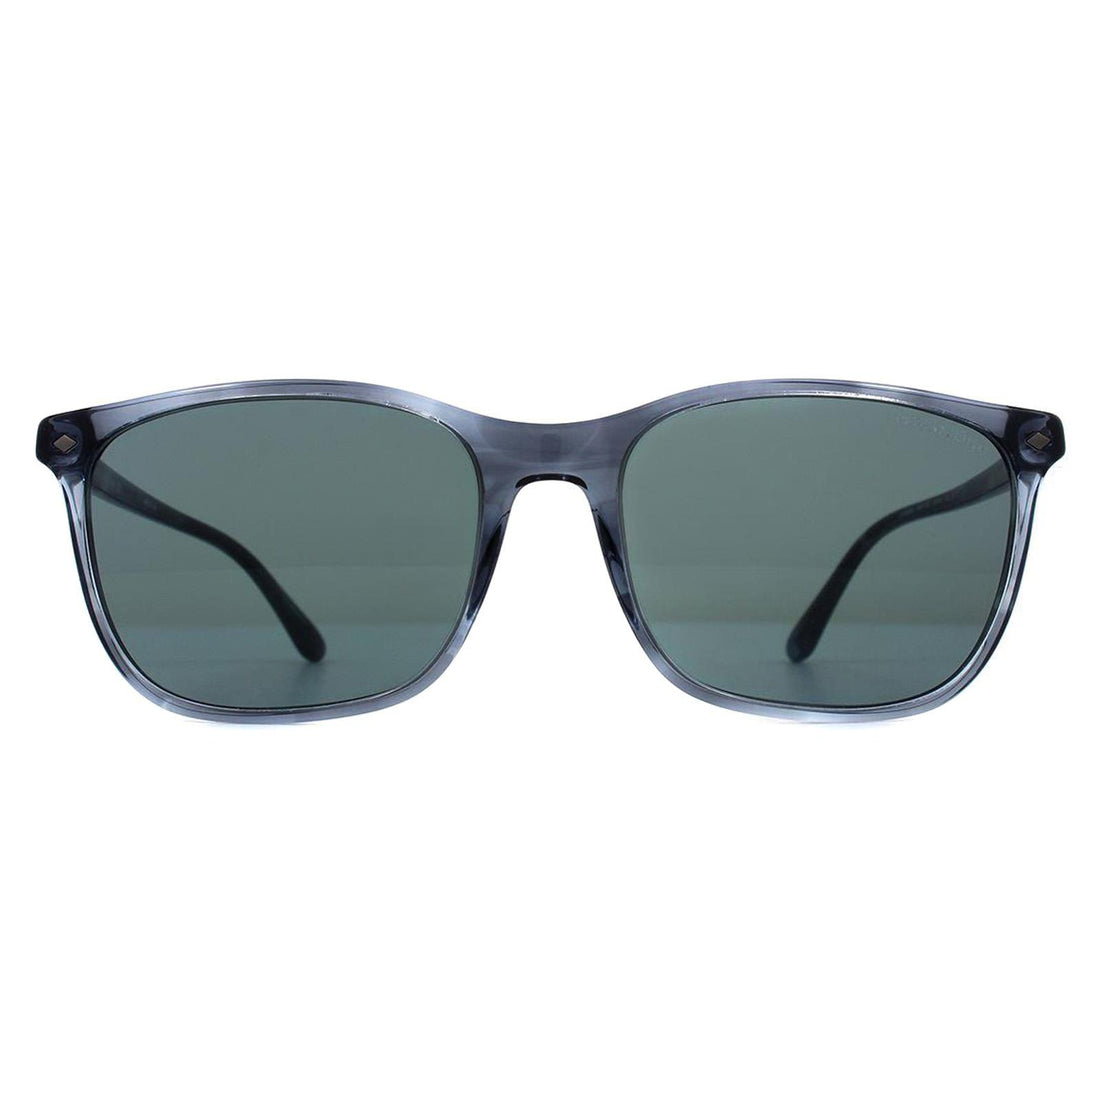 Giorgio Armani AR8089 Sunglasses Striped Blue / Blue Gradient